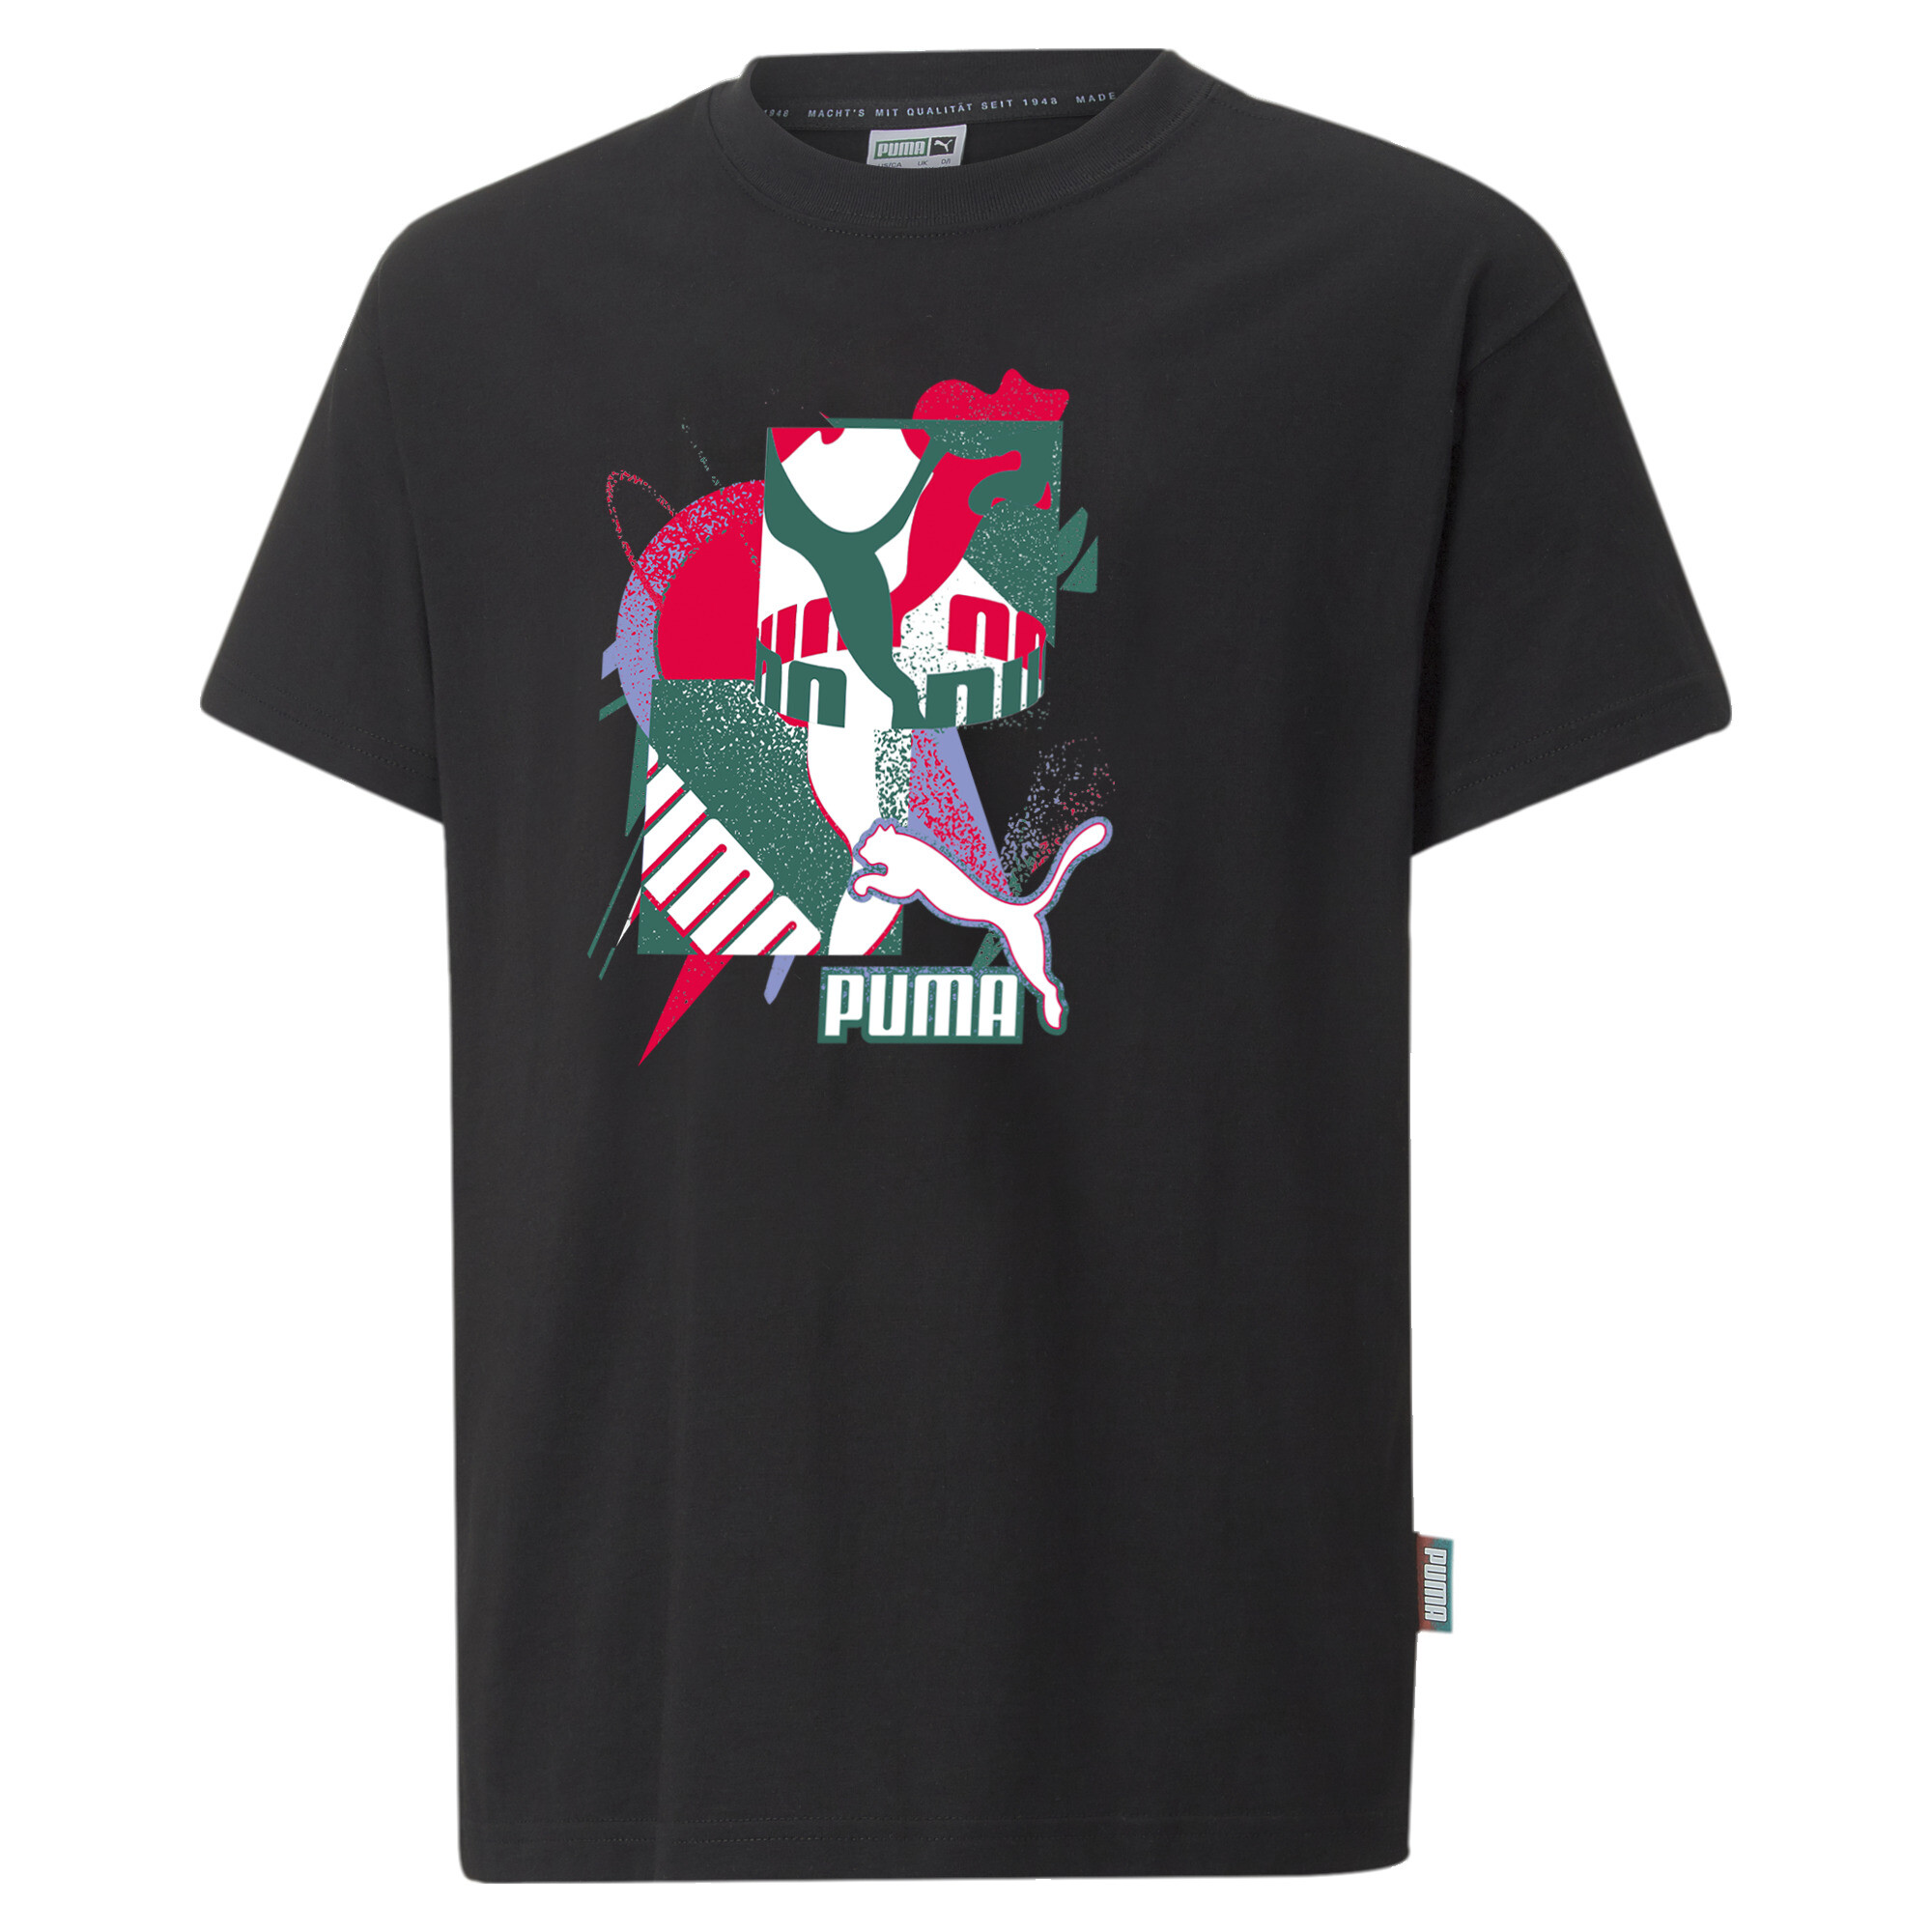 PUMA Fandom T-Shirt In Black, Size 15-16 Youth